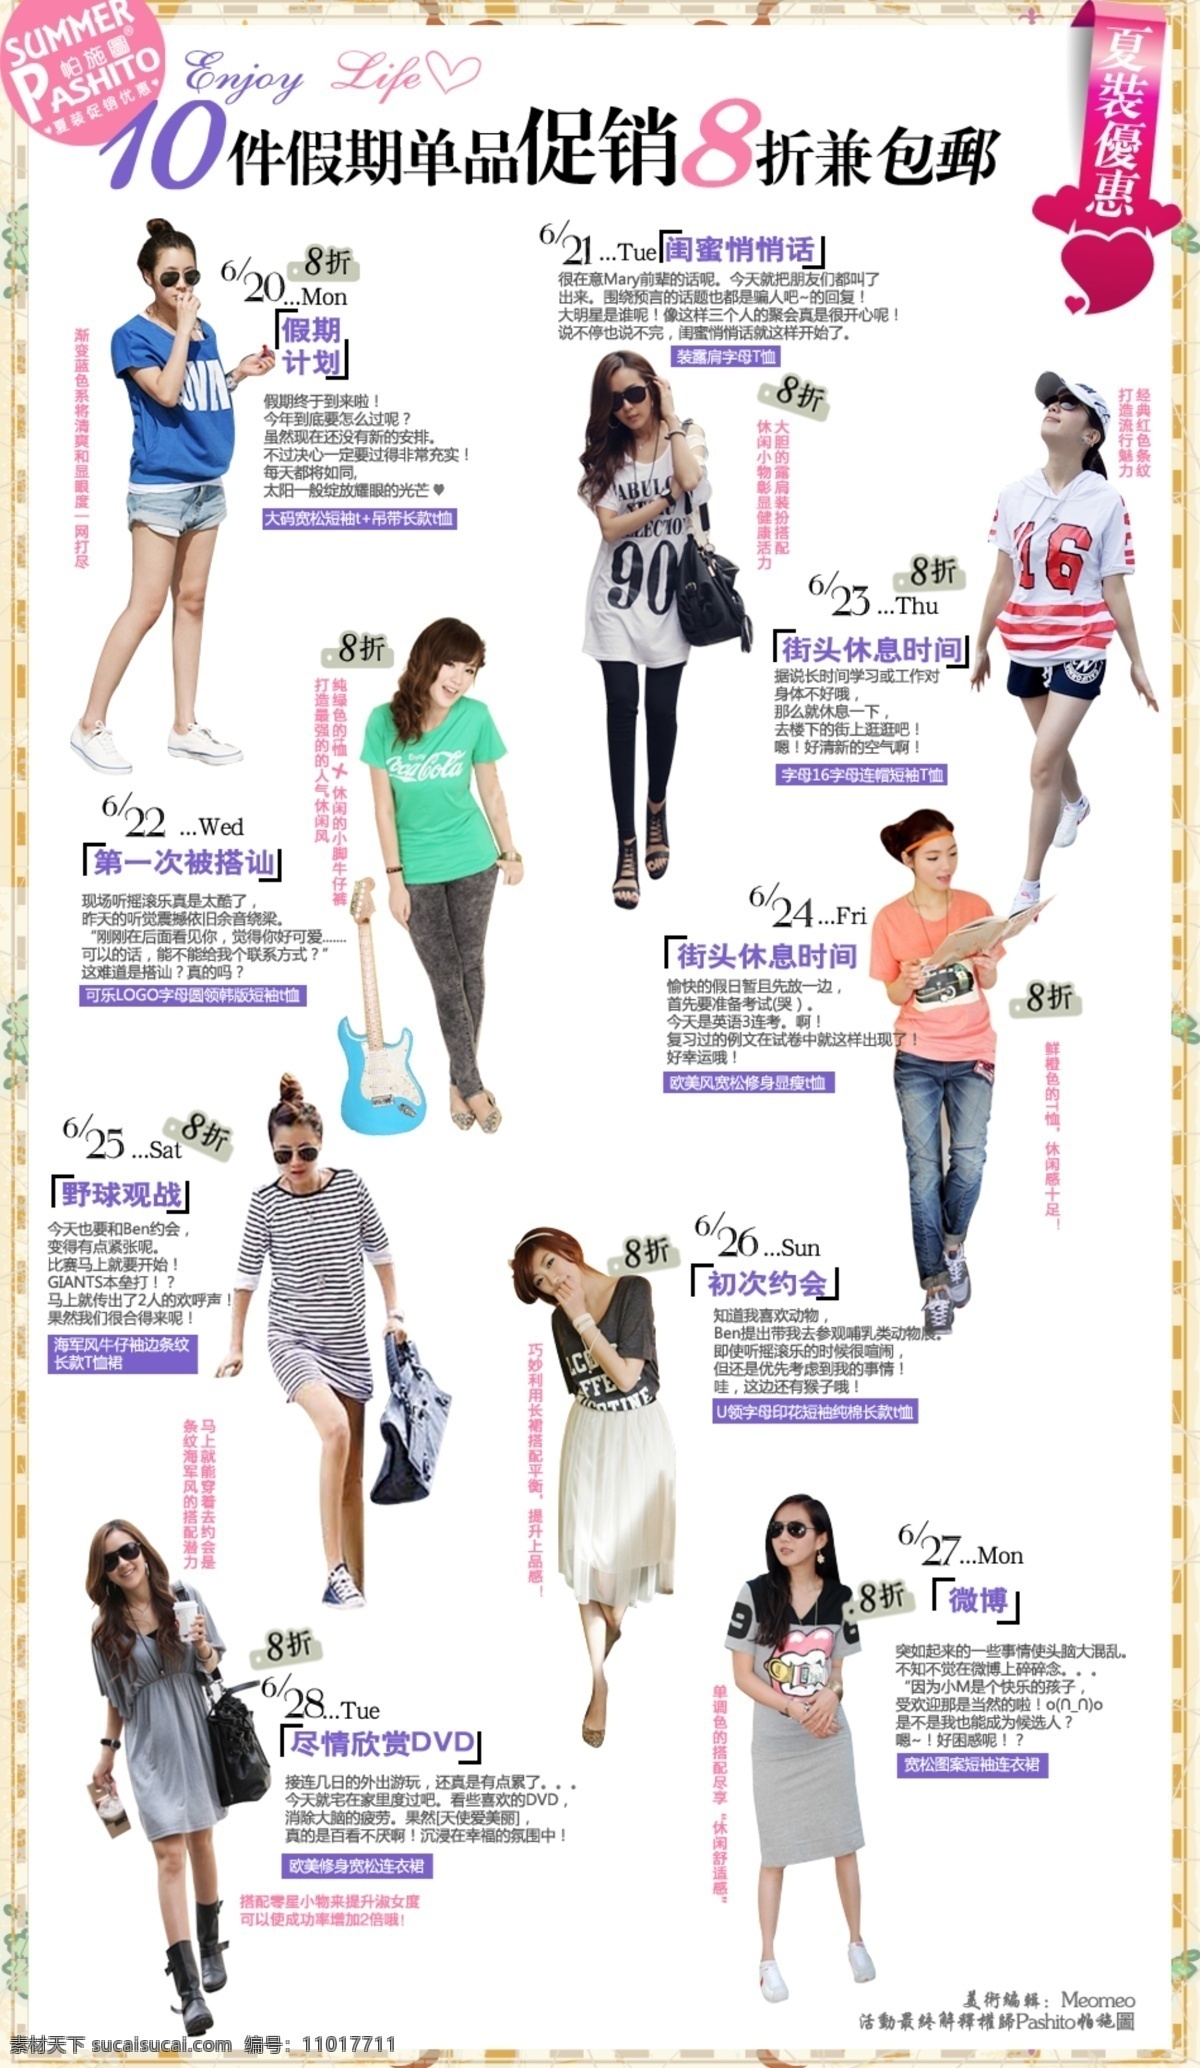 日韩 风 杂志 内页 促销 模块 海报 时尚海报 内页风 原创设计 原创淘宝设计